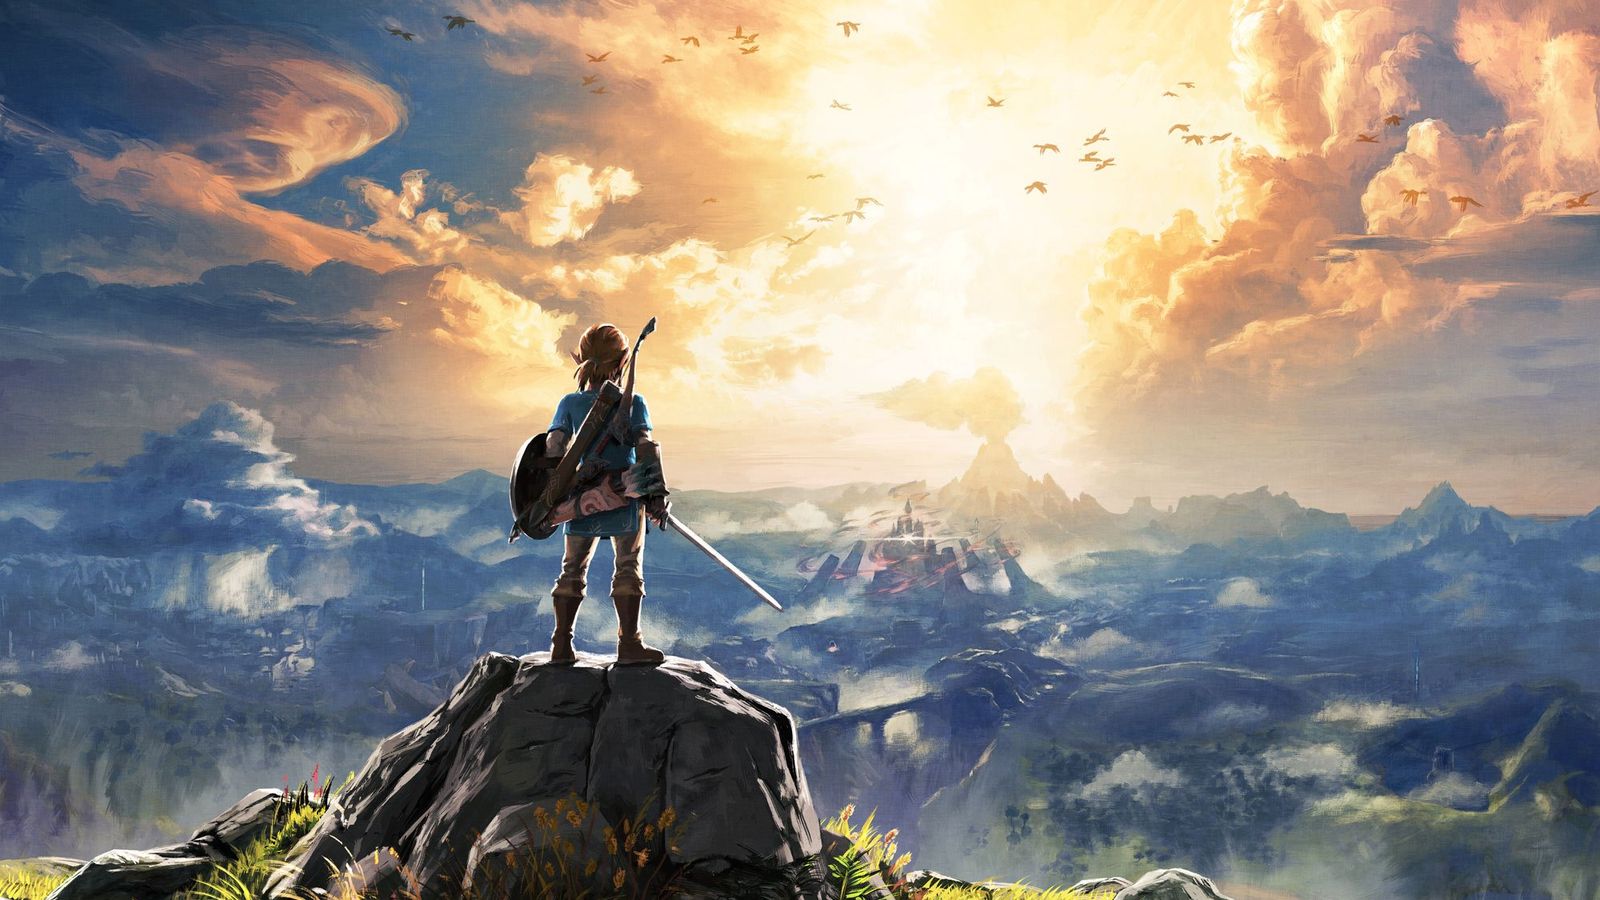 The Legend of Zelda: Breath of the Wild – Update 1.3.1.